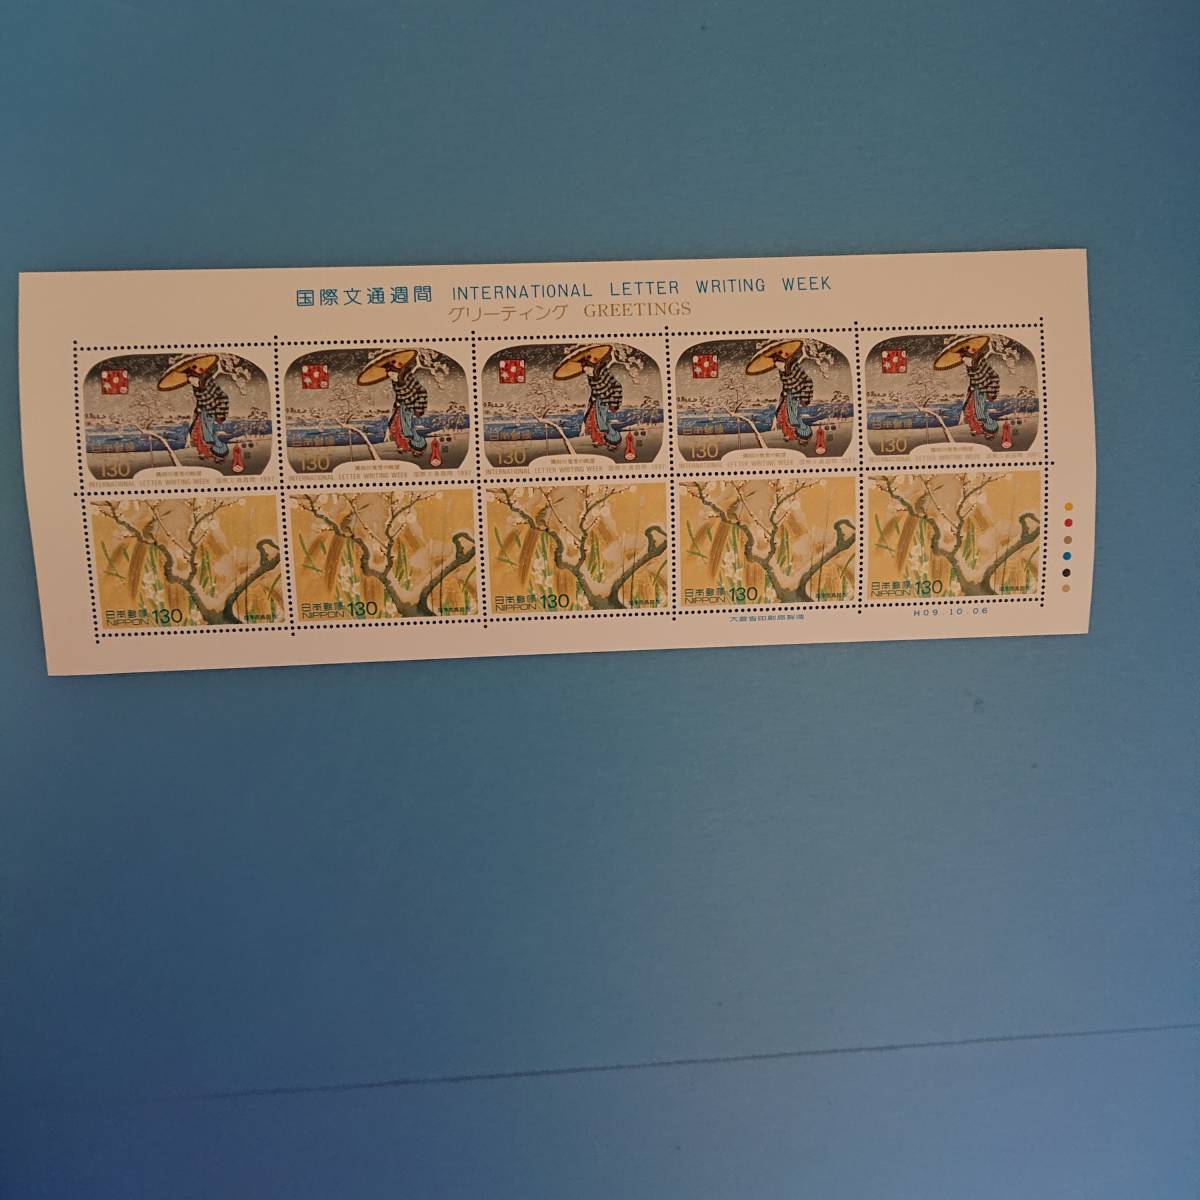 国際文通週間 グリーティング郵便切手 発行日 平成9年10月6日_画像5